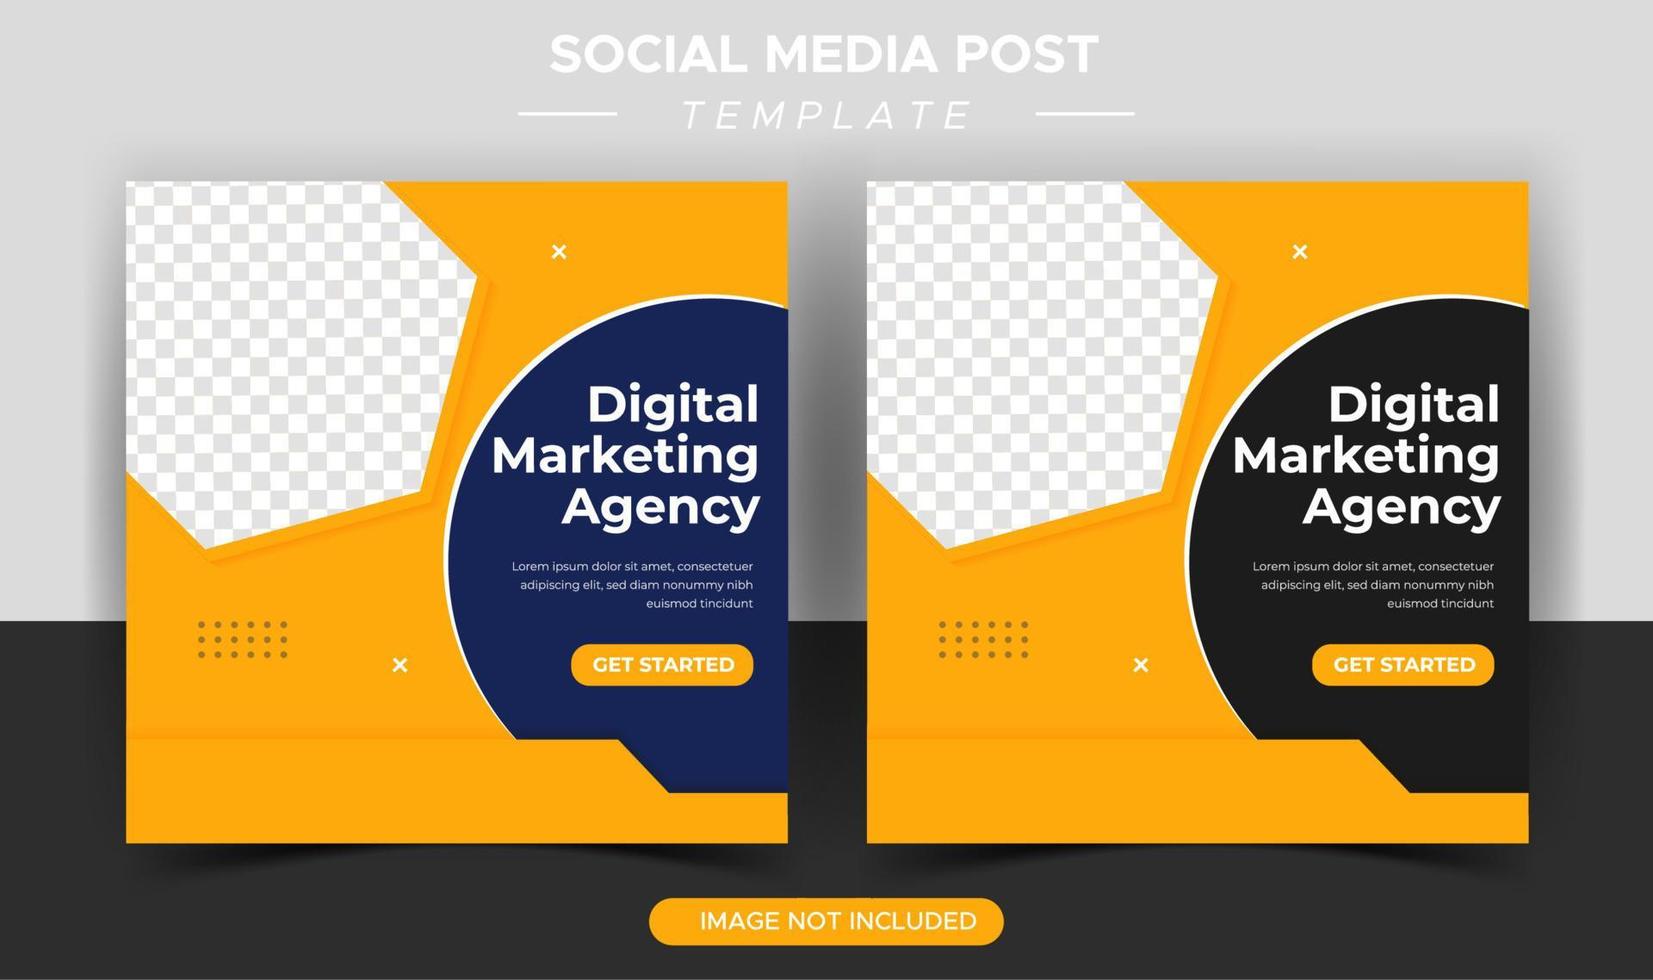 plantilla de publicación de redes sociales de marketing de negocios digitales vector